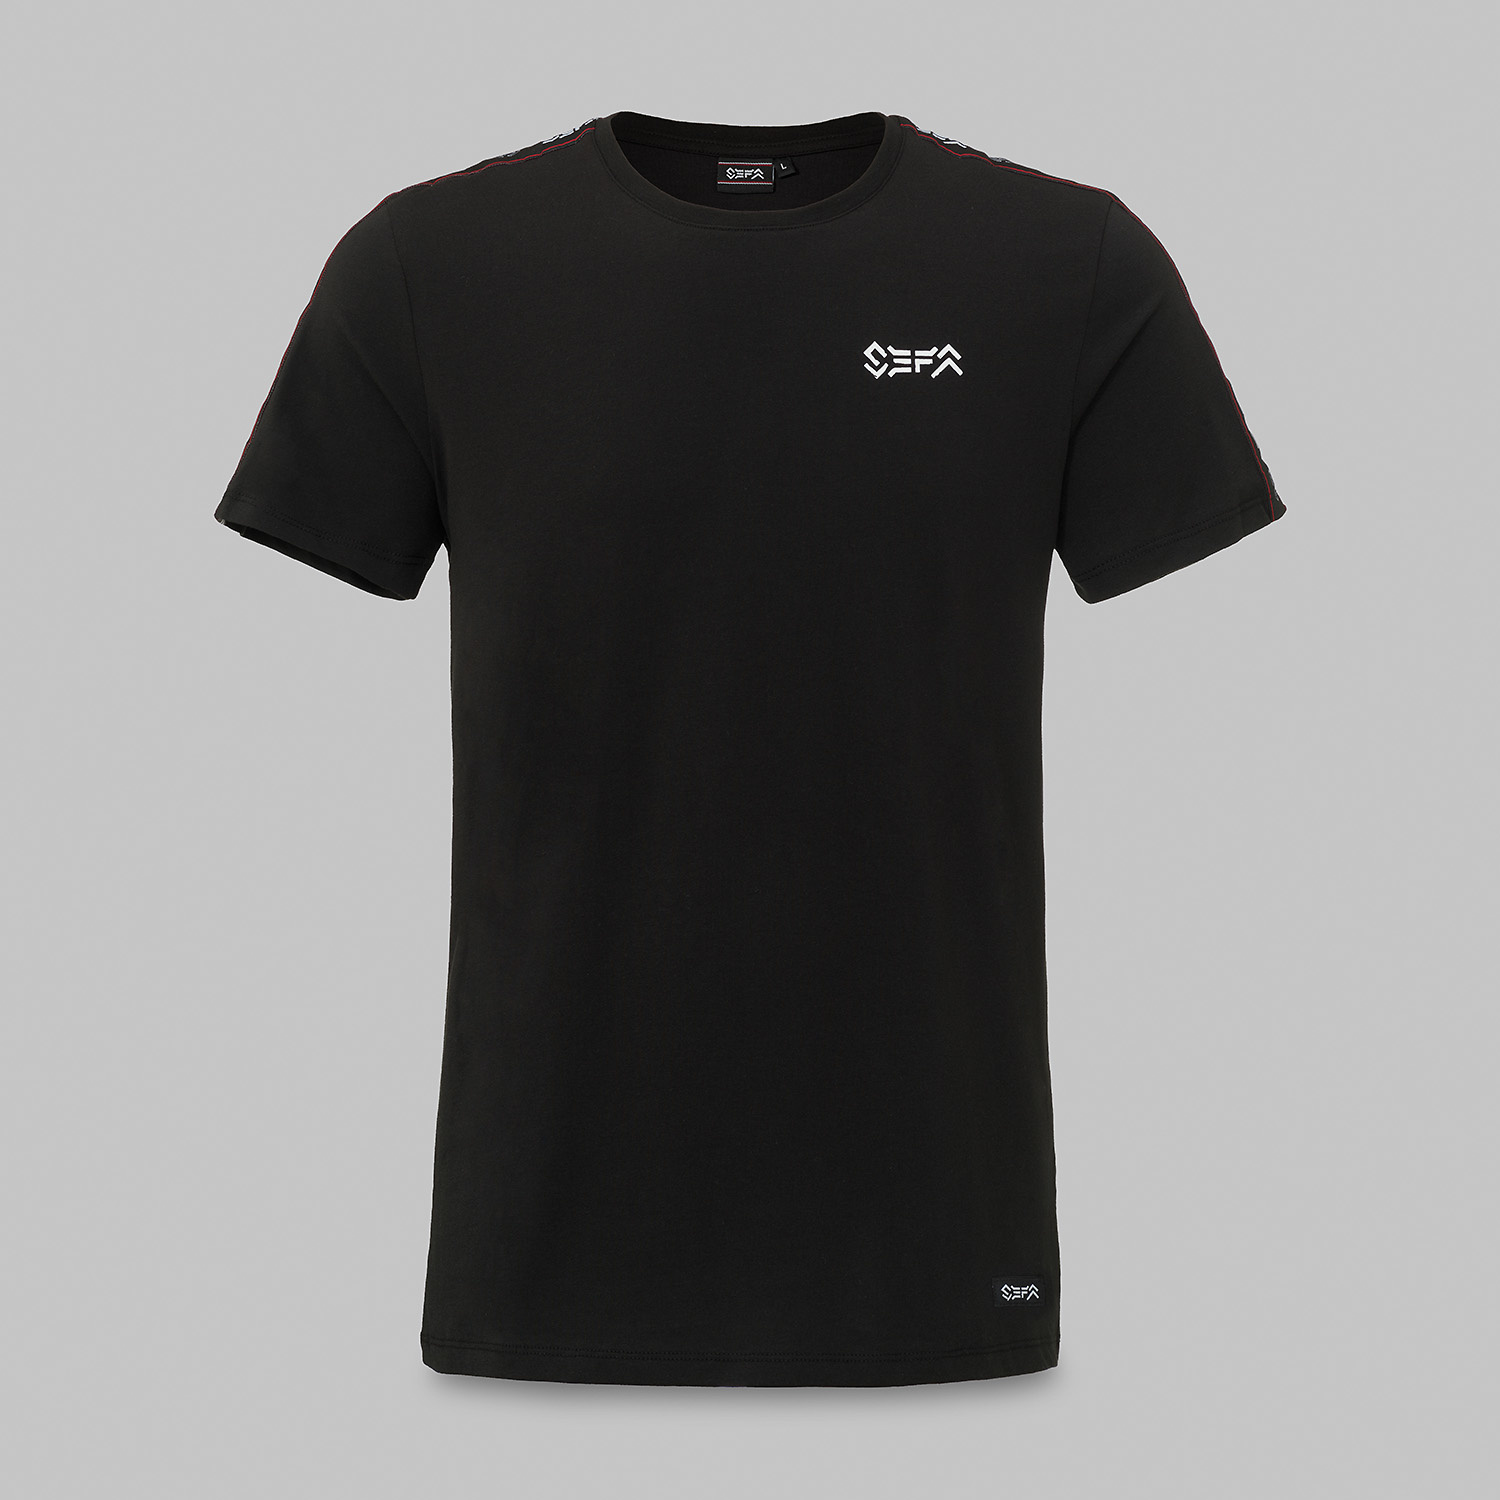 Sefa t-shirt black/tape-2